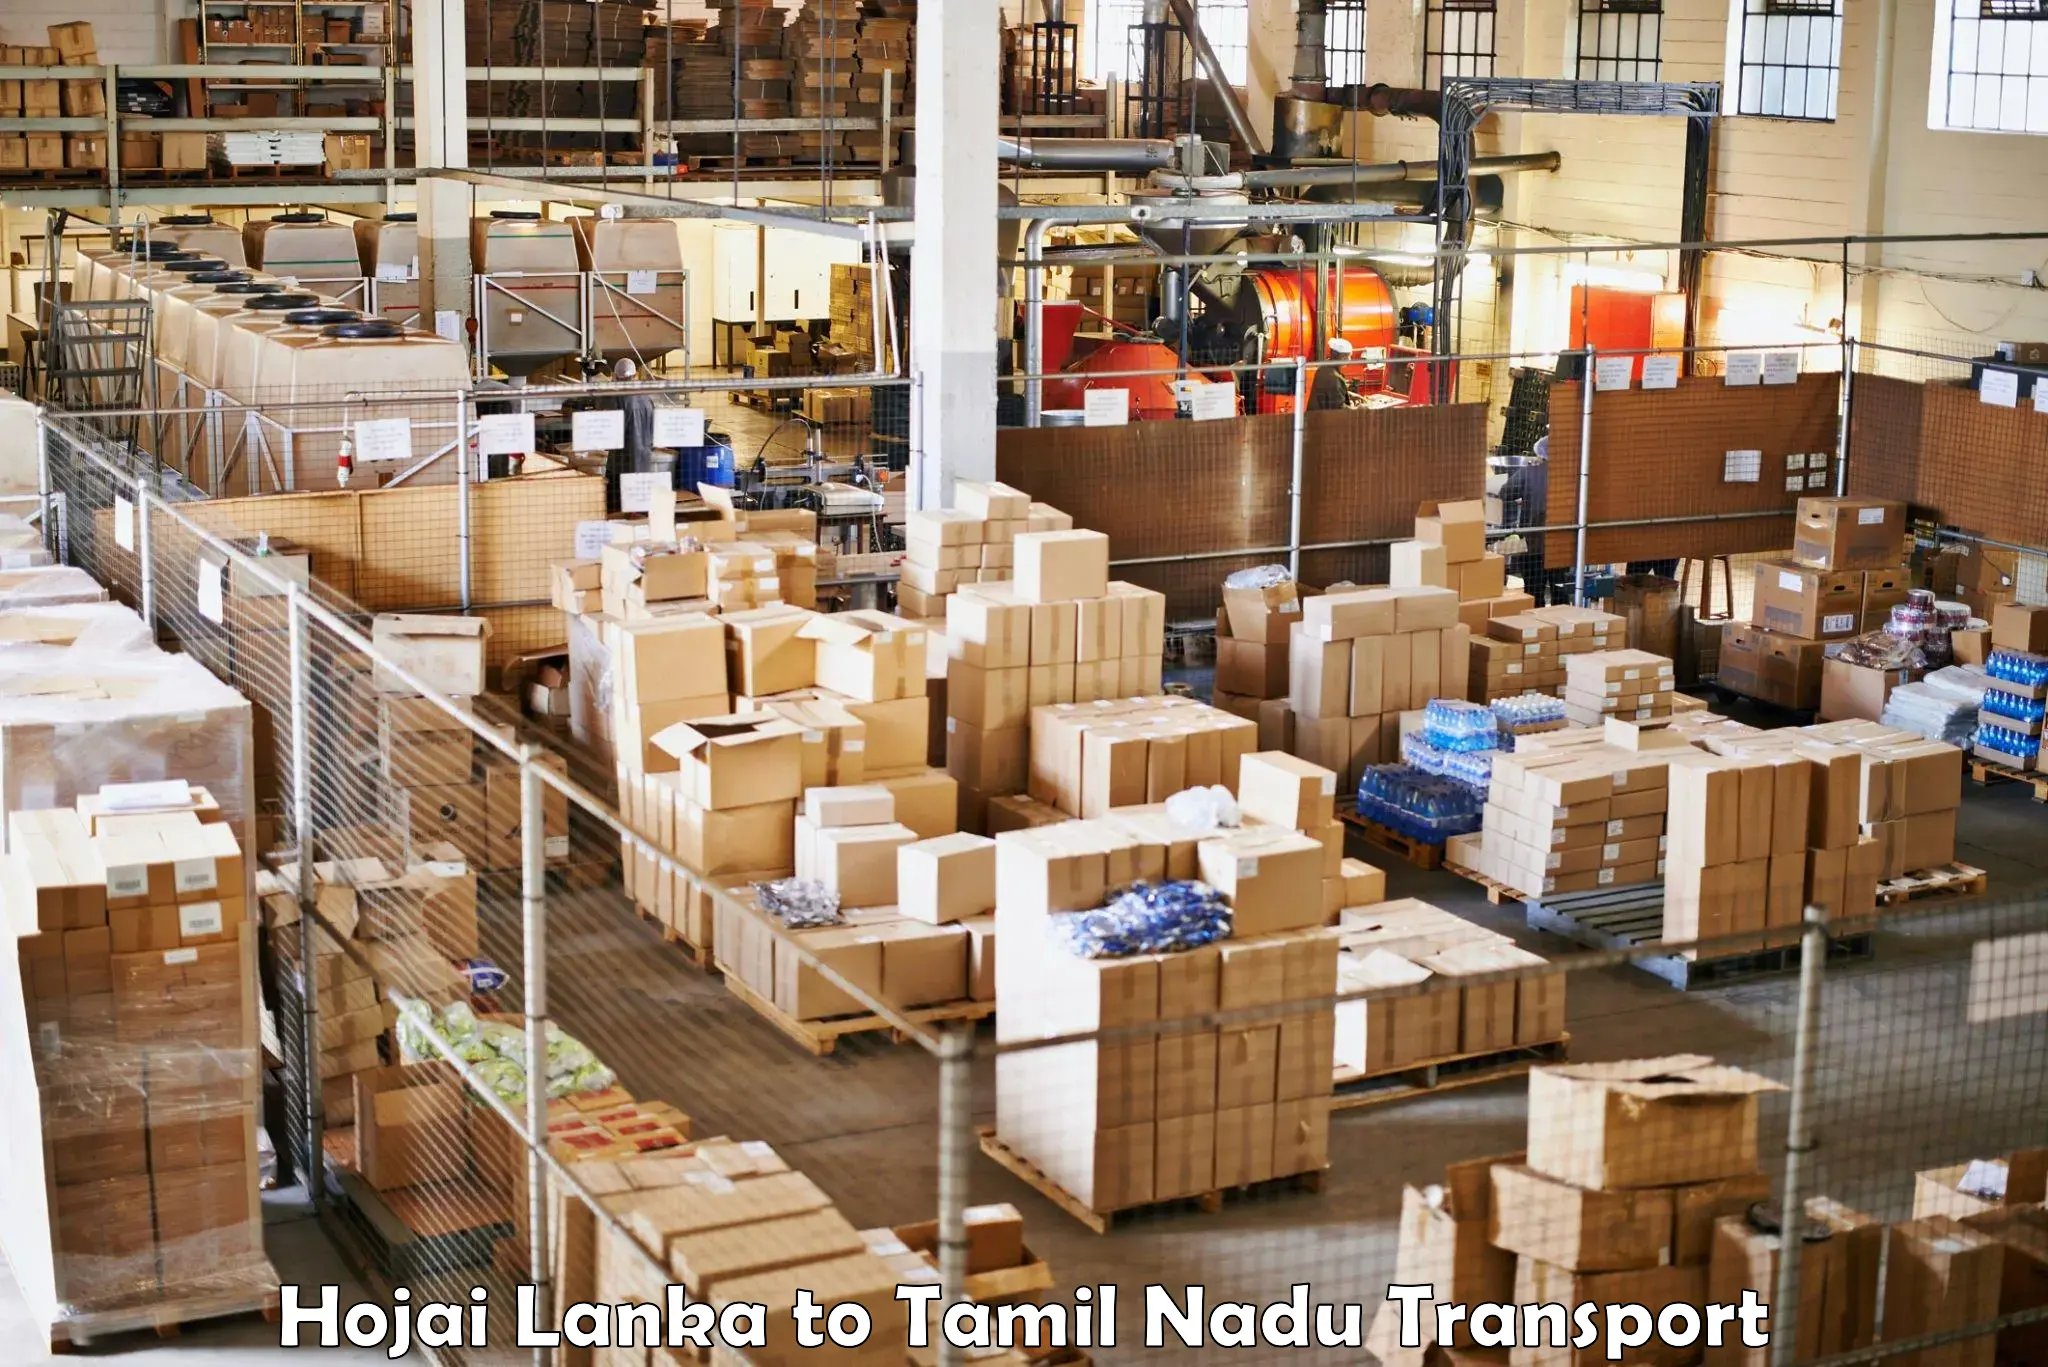 Shipping services Hojai Lanka to Thisayanvilai